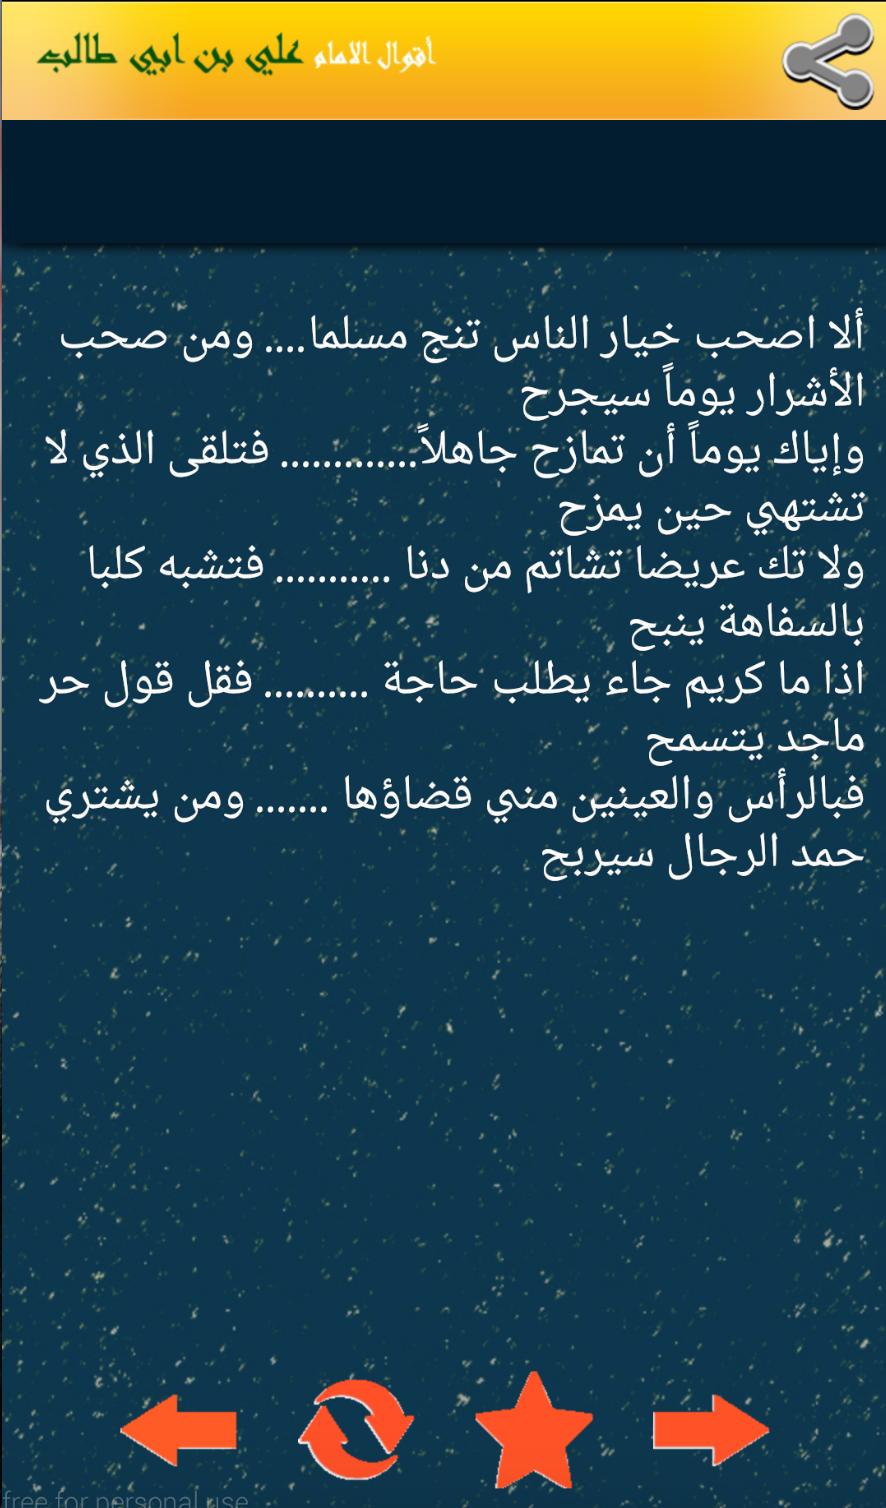 اقوال الامام علي بن ابي طالب 2018 For Android Apk Download